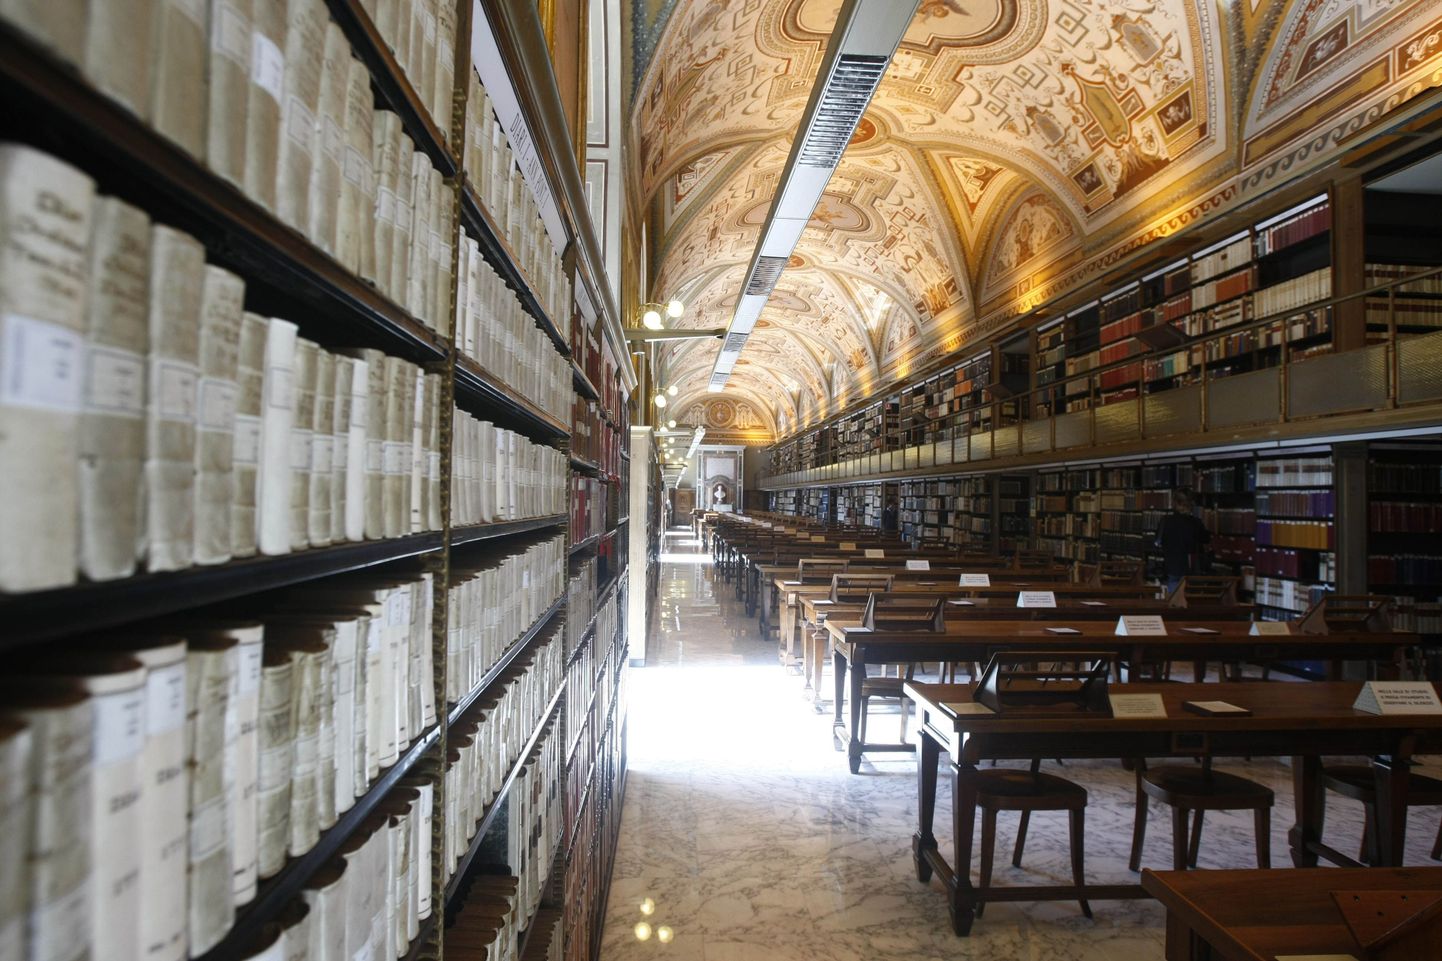 Vatikani raamatukogu astus 21. sajandisse